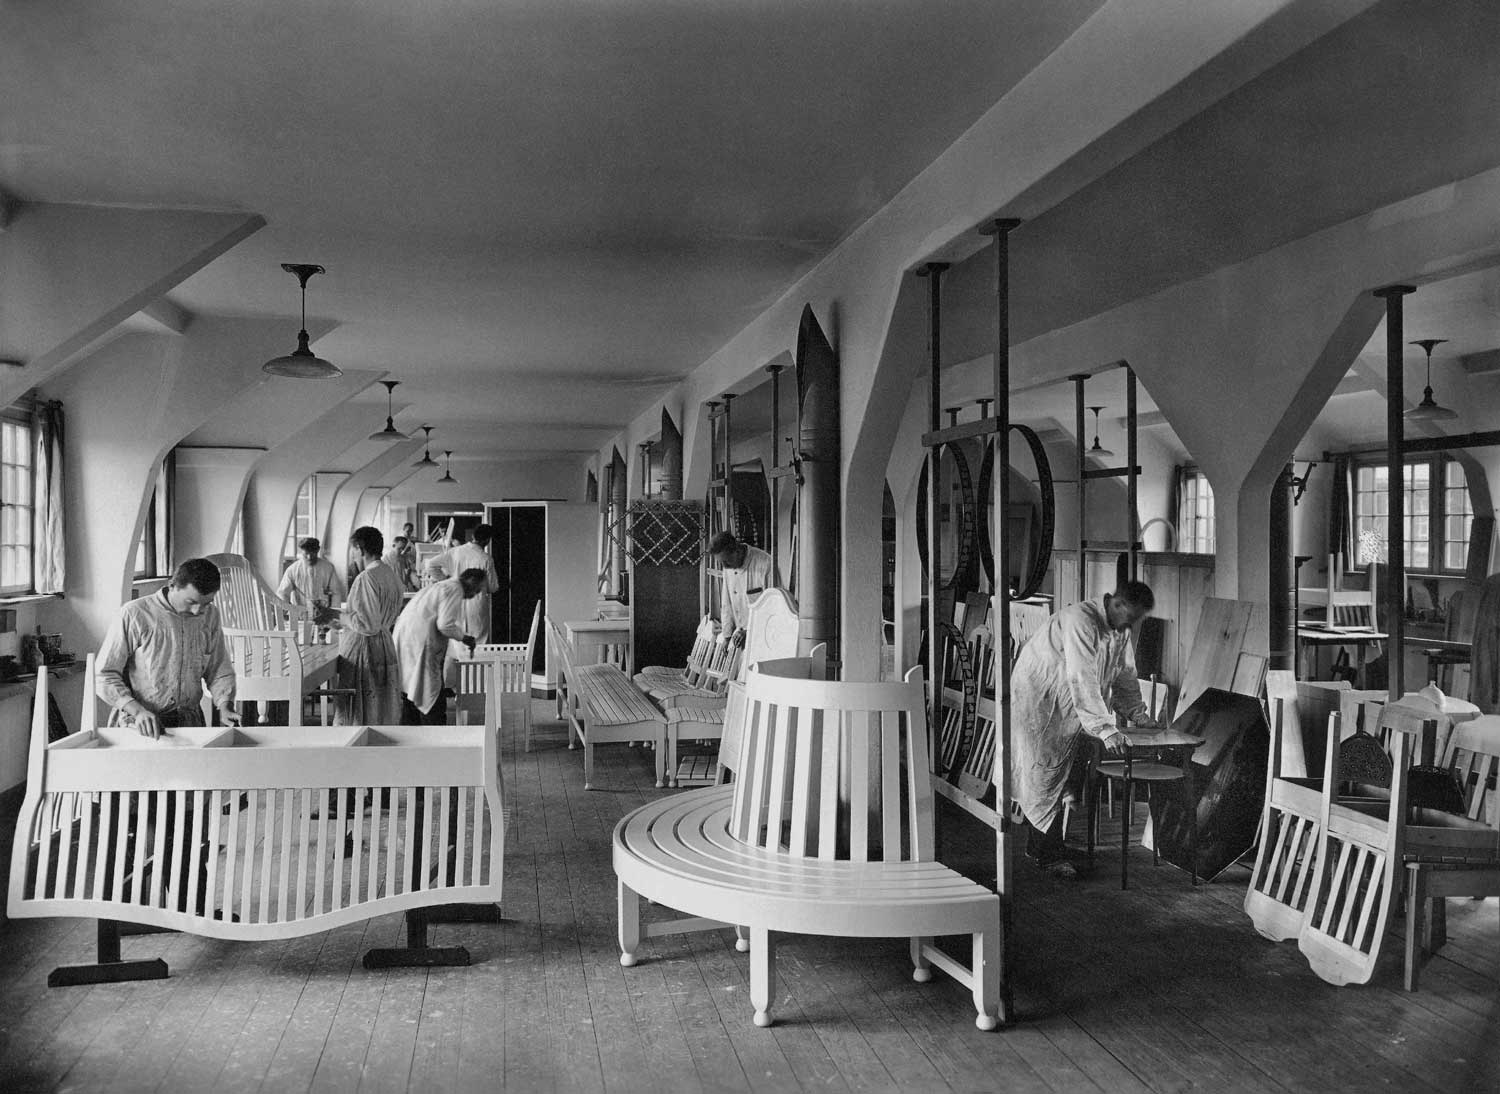 Foto, schwarz-weiß: Blick in eine Werkstatt, in der mehrere Menschen an Sitzmöbeln arbeiten.